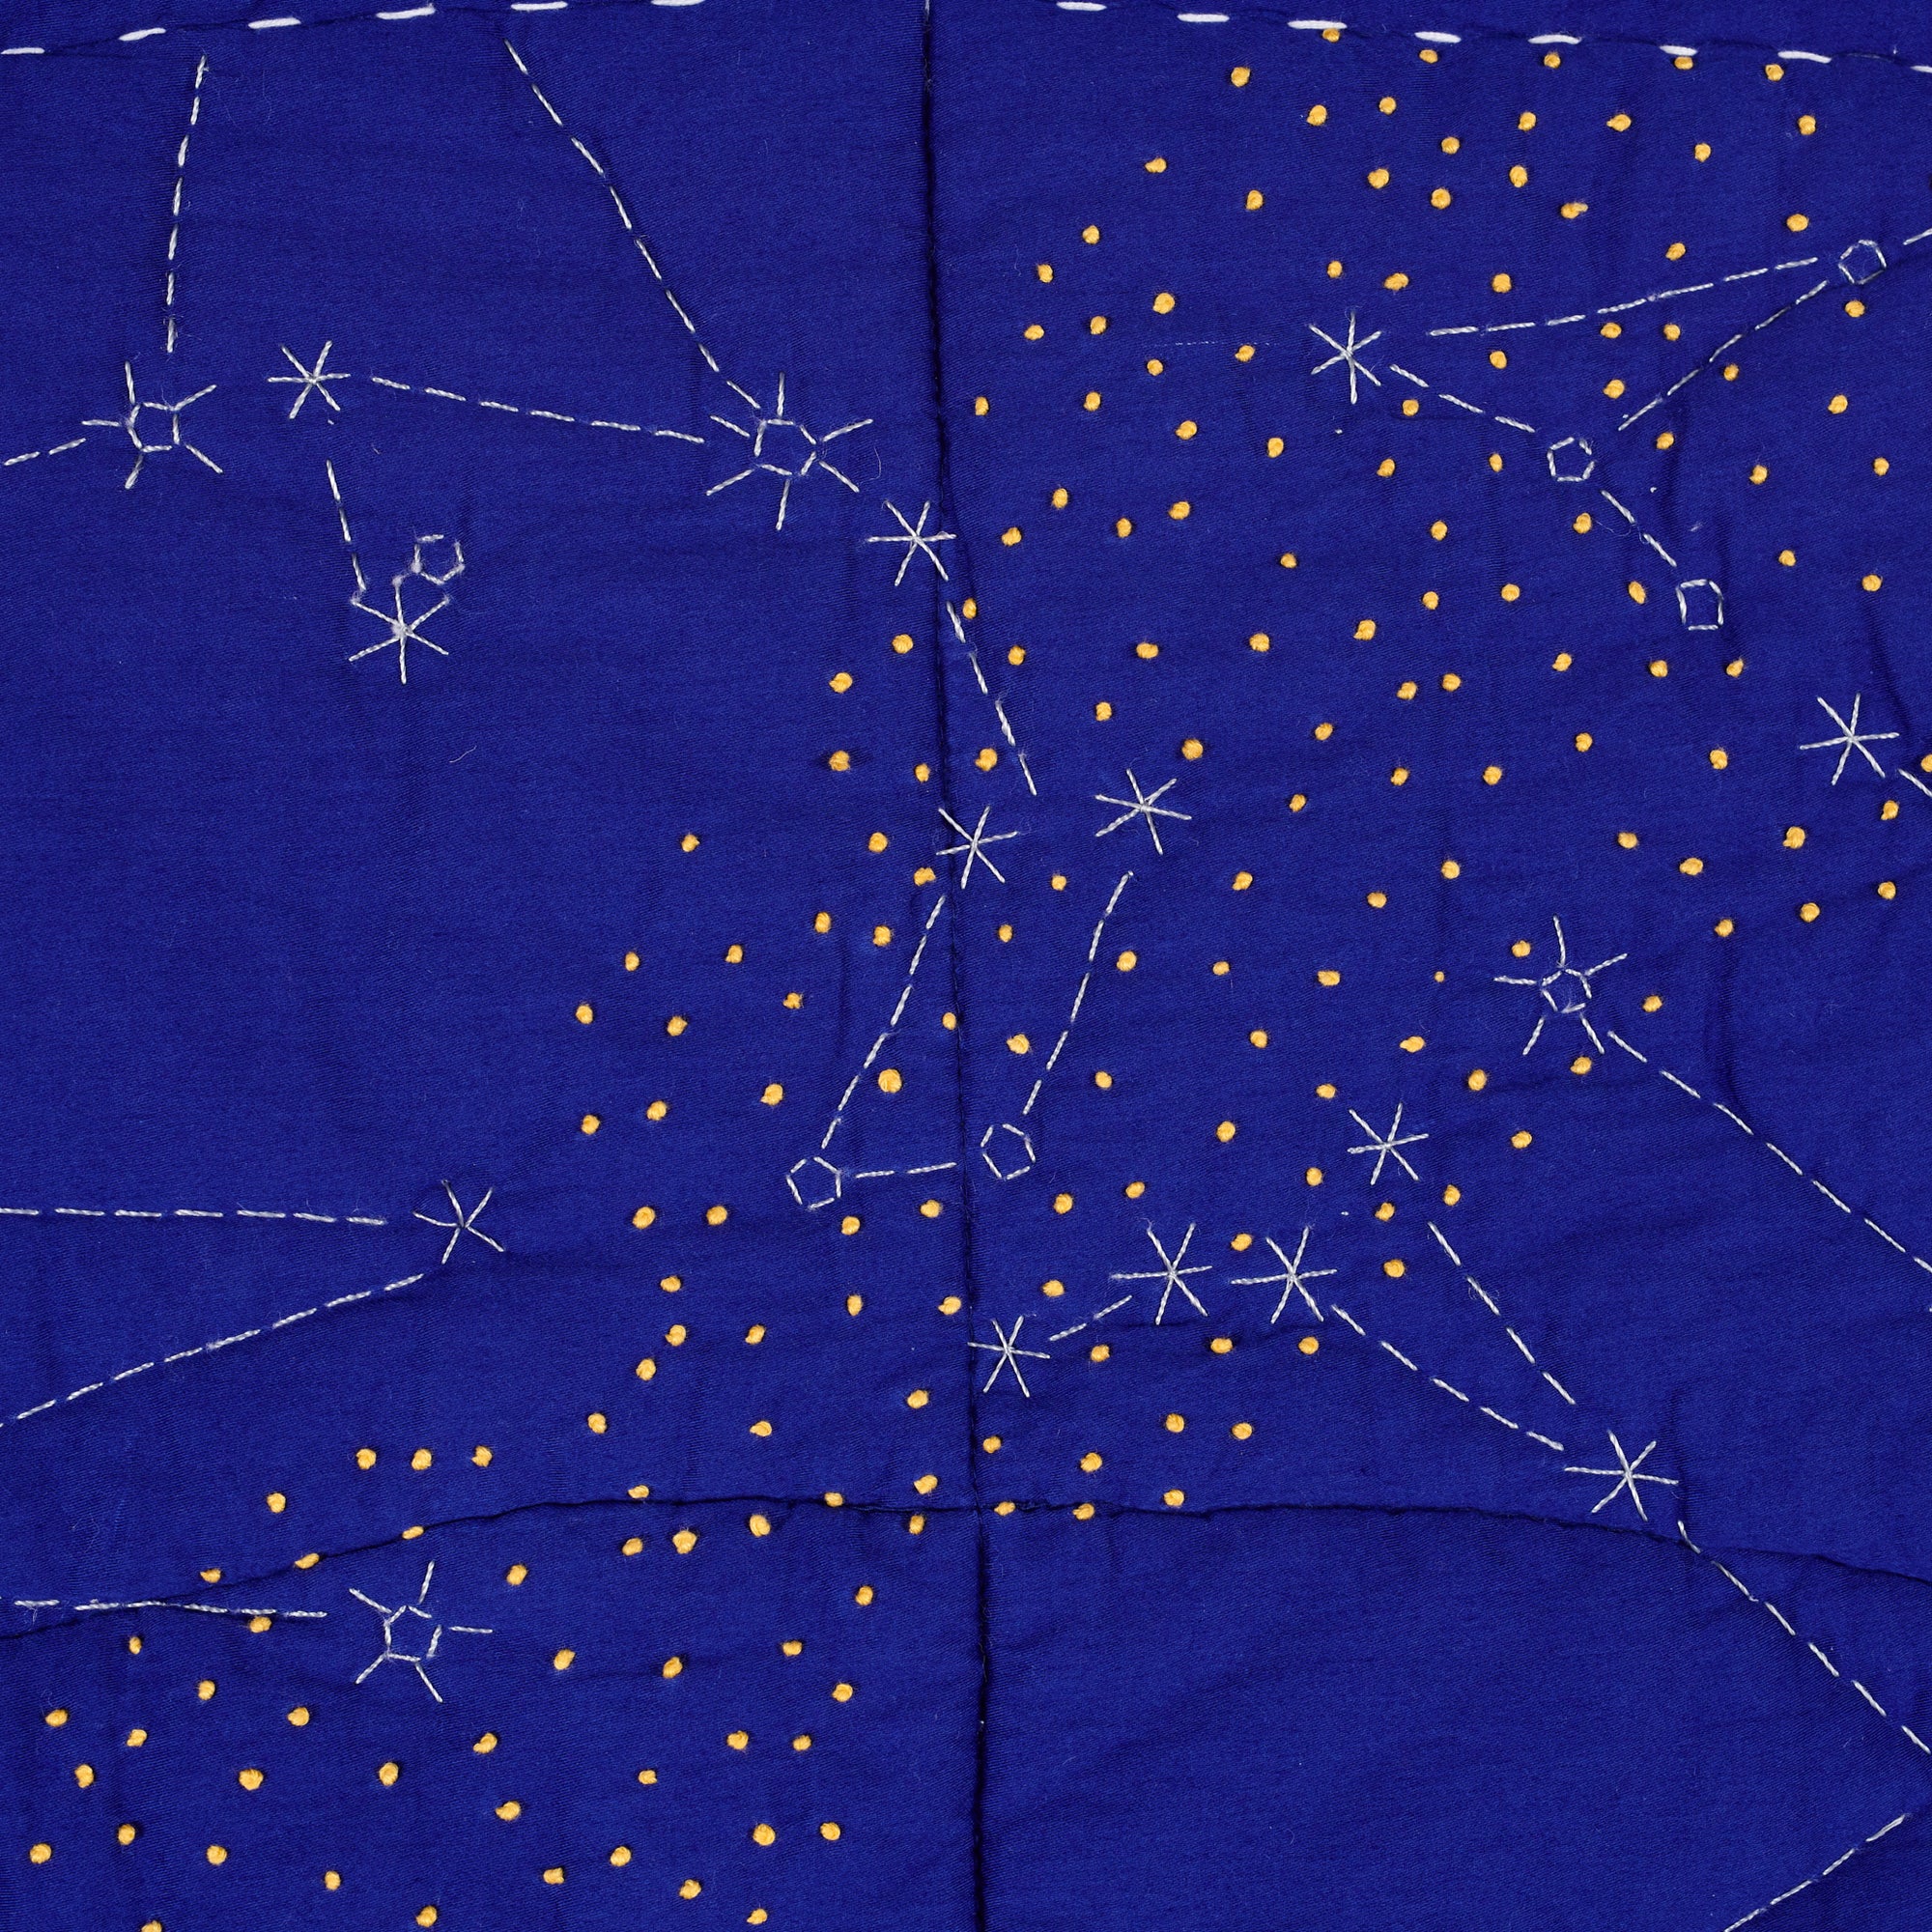 Constellation Quilt